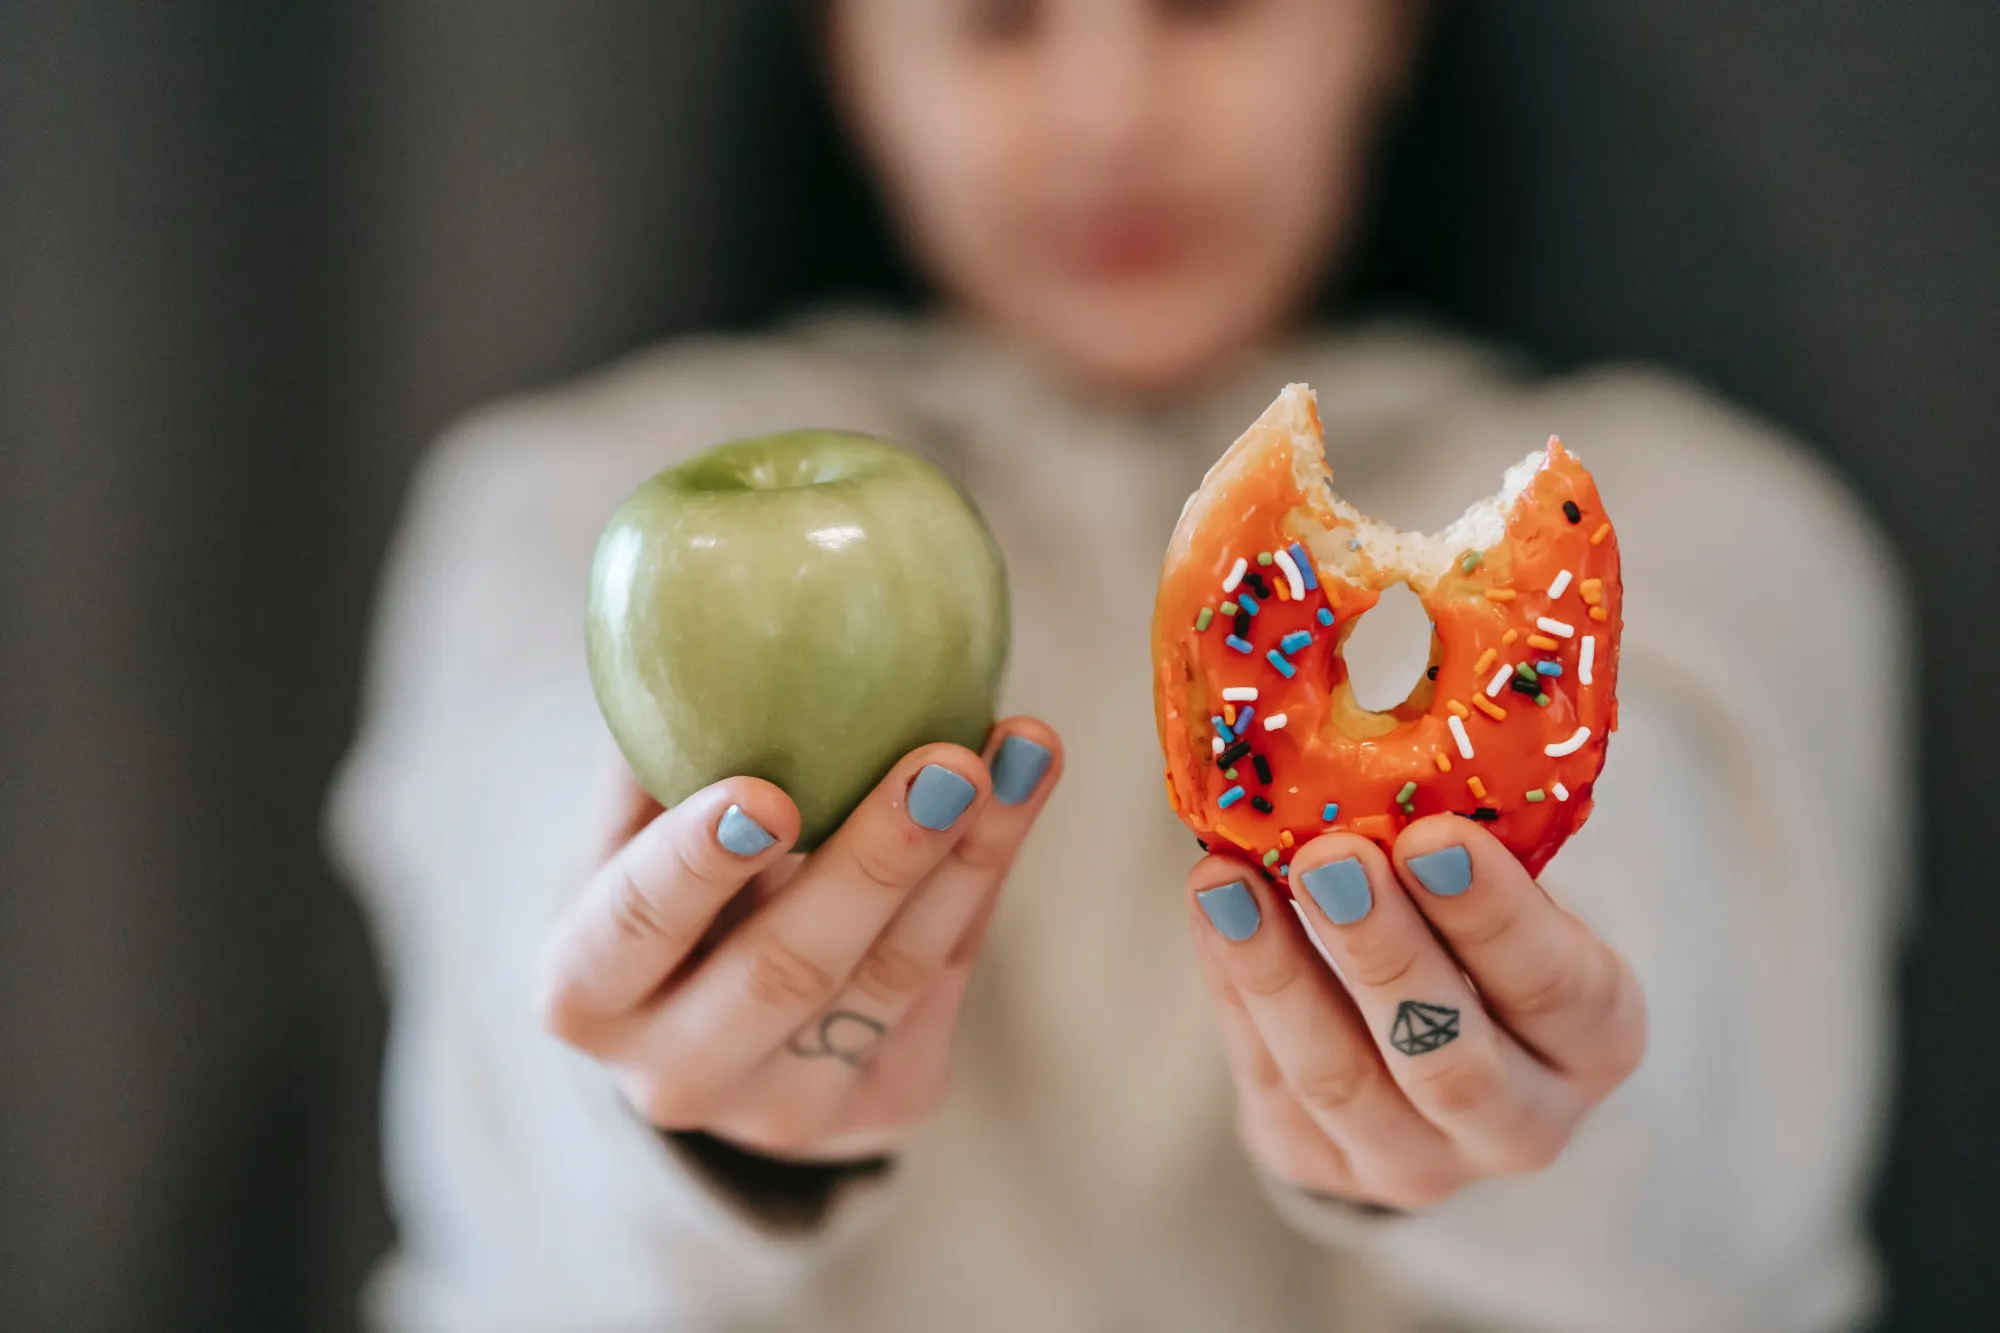 Apple vs Donut